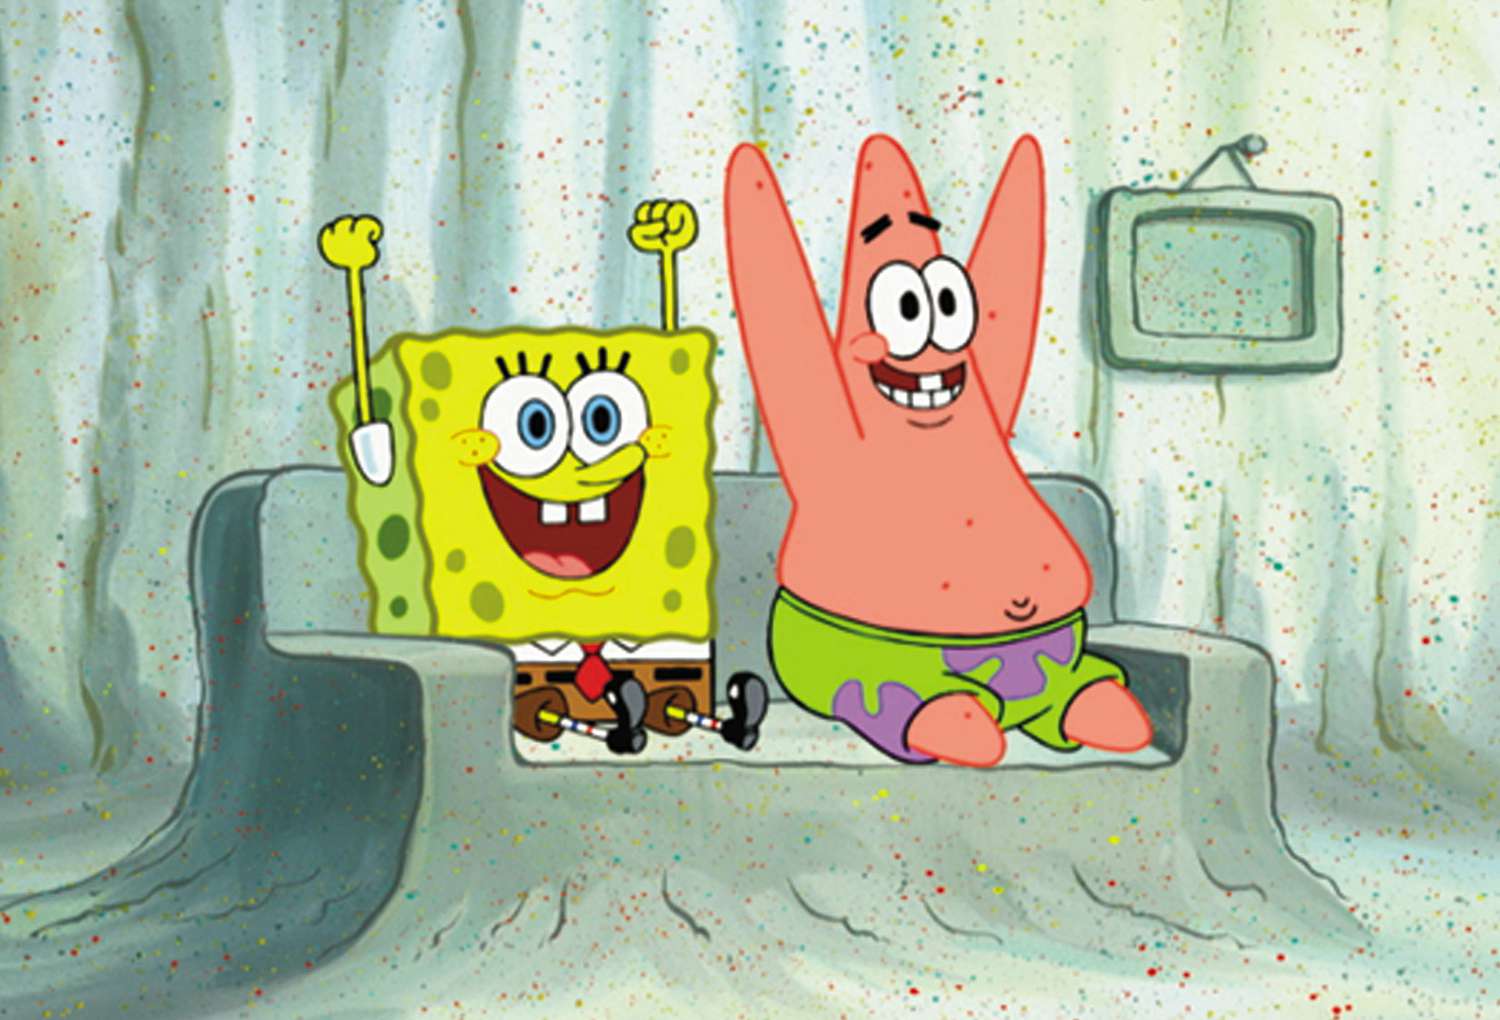 Patrick Star and SpongeBob SquarePants